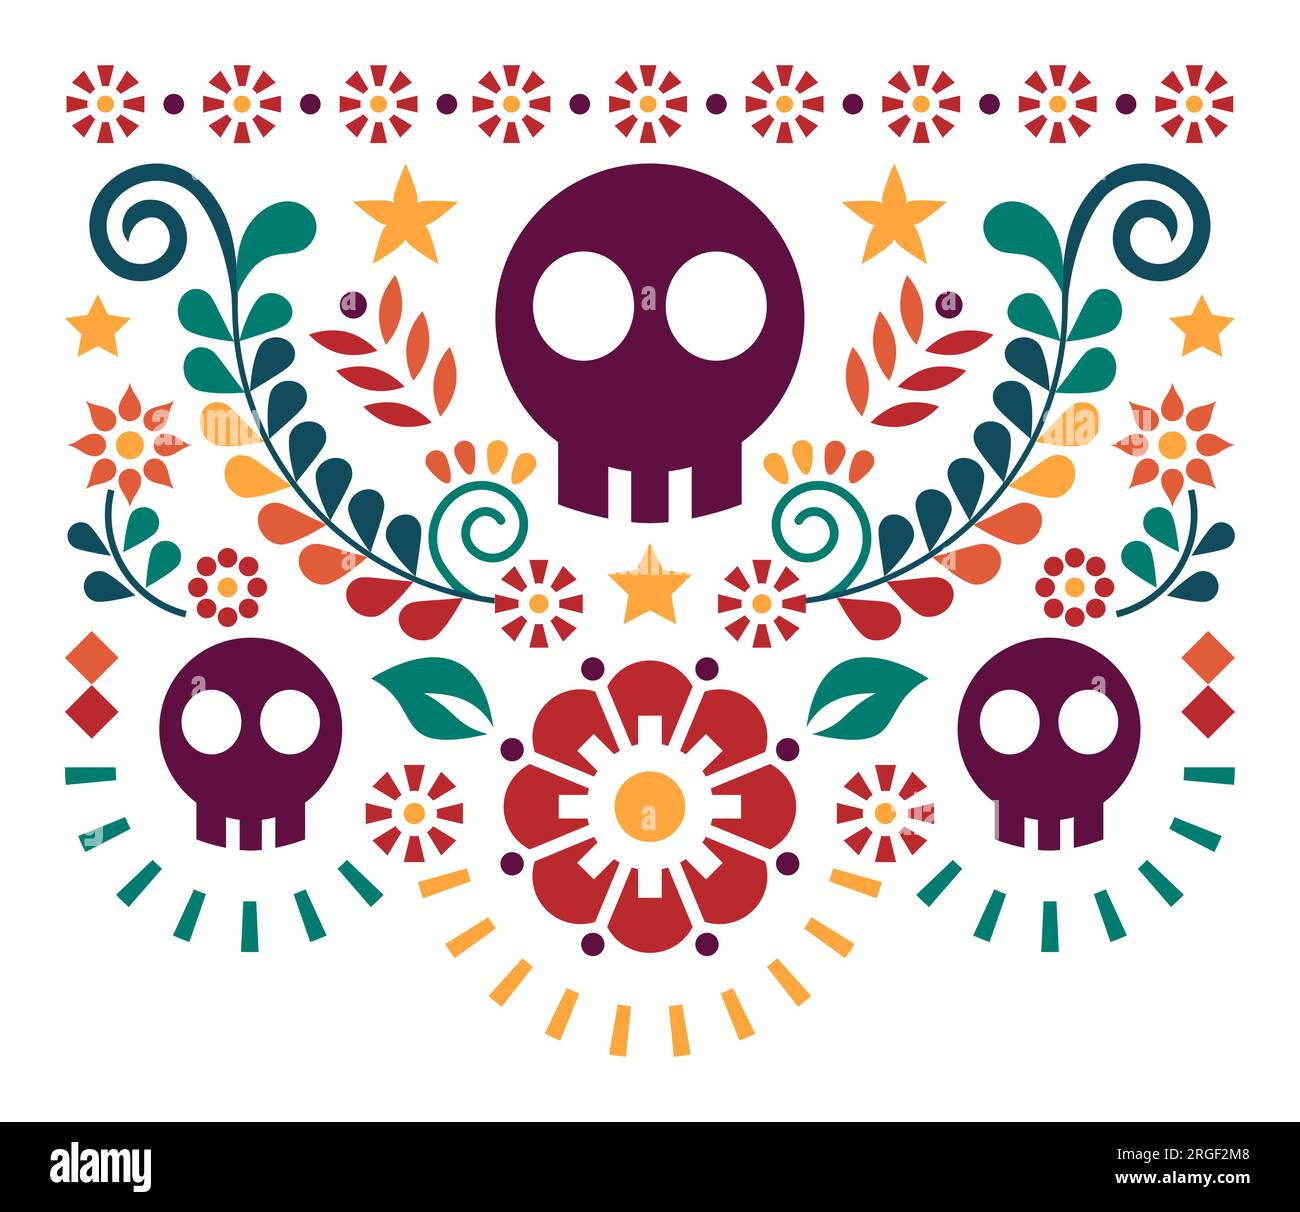 Mexikanisches Schädelvektordesign mit Blumen – traditionelles Halloween- und Day of the Dead-Muster oder Grußkarte Stock Vektor